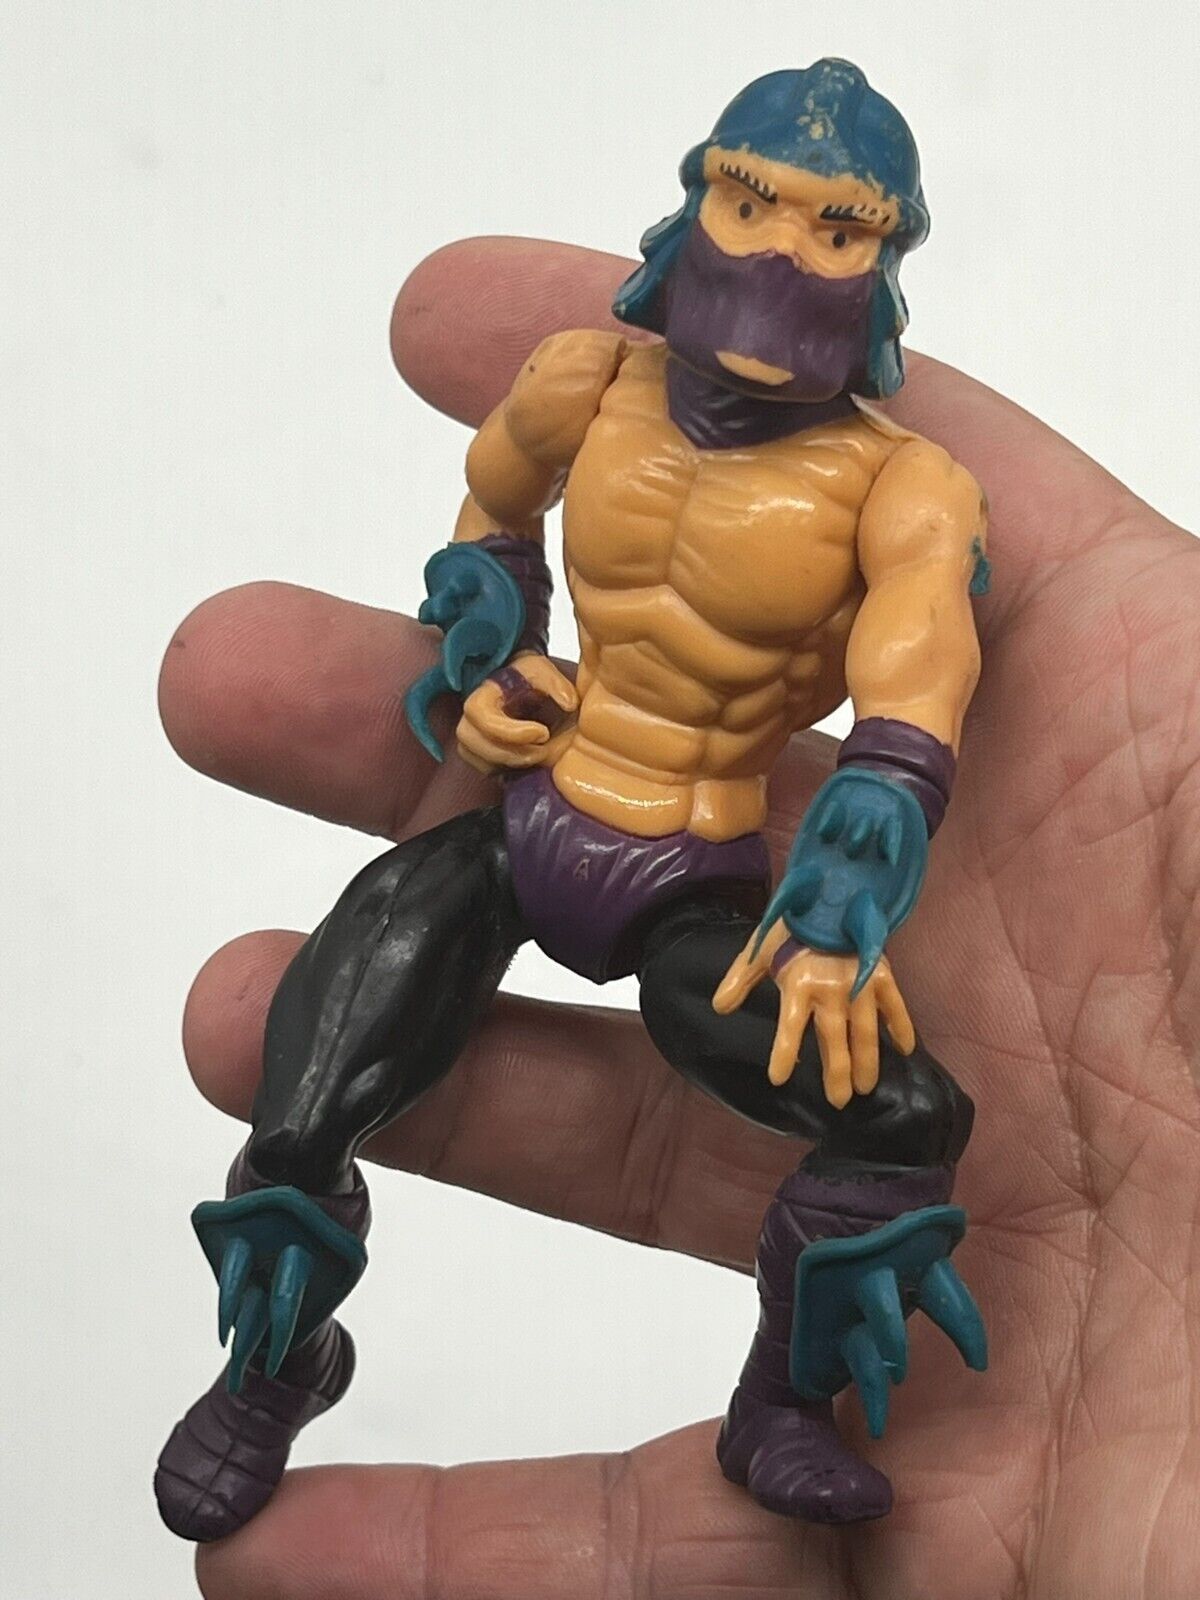 1988 TMNT Teenage Mutant Ninja Turtles SHREDDER Toy Action Figure